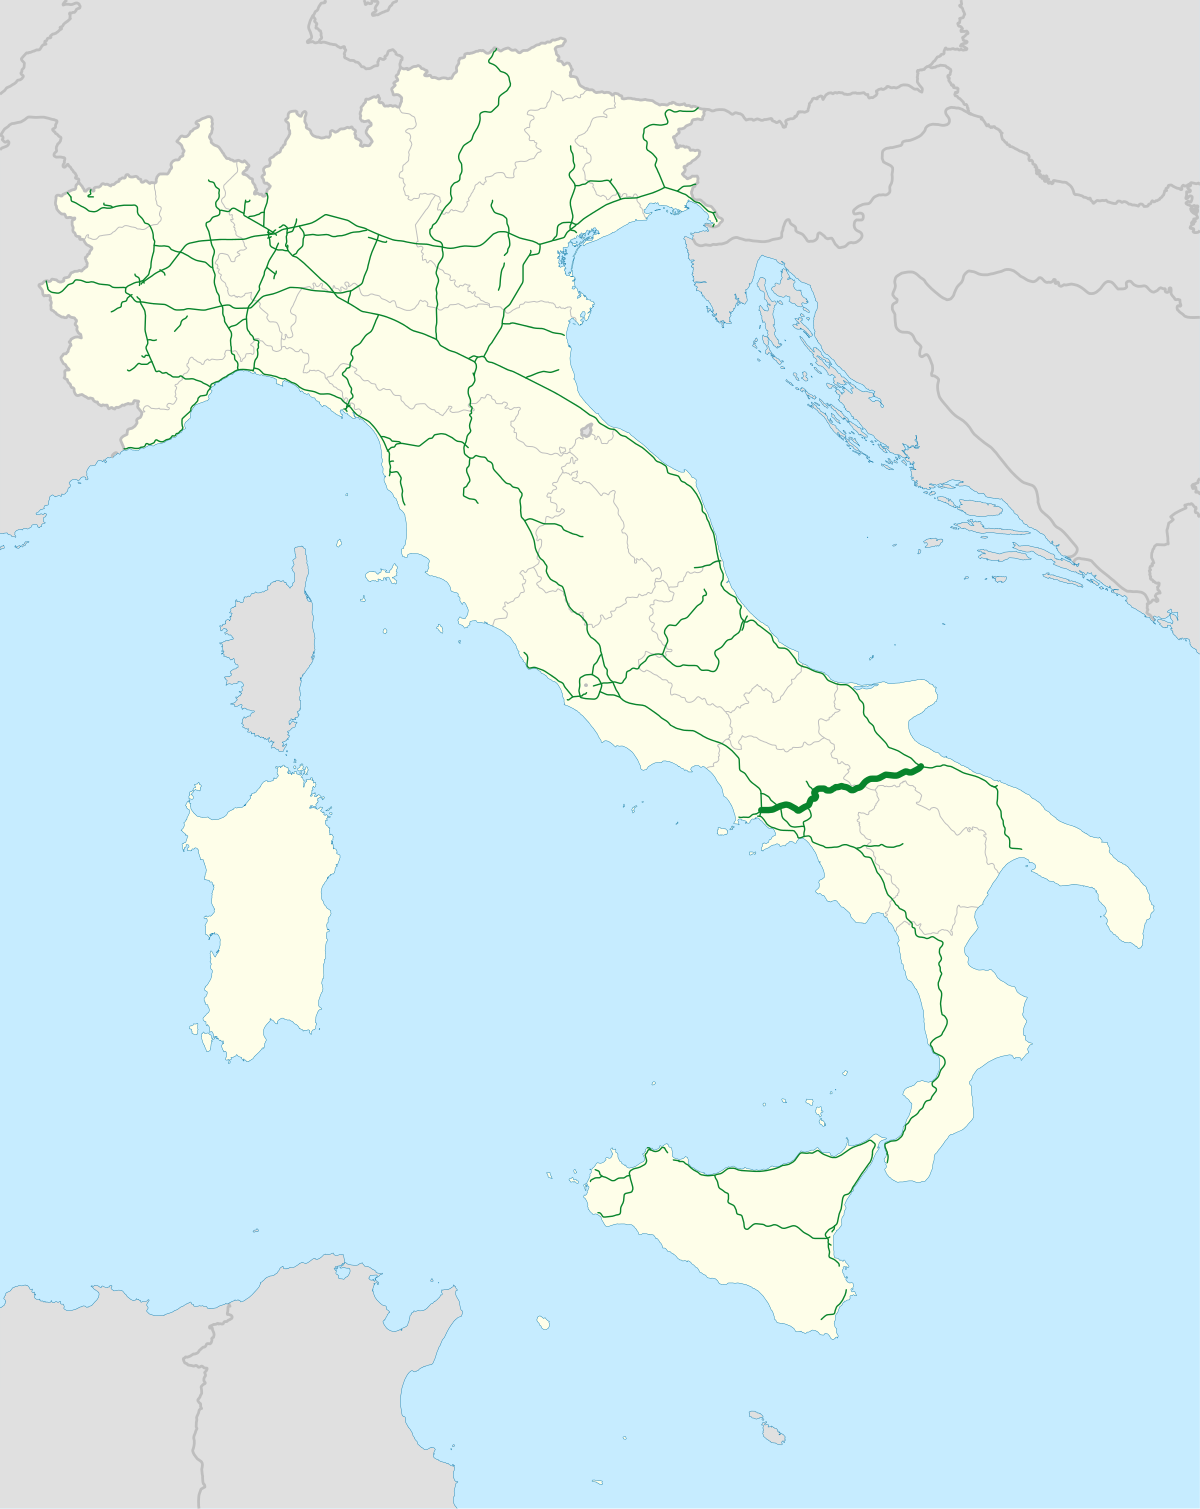 Autostrada A16 (Italia) - Wikipedia